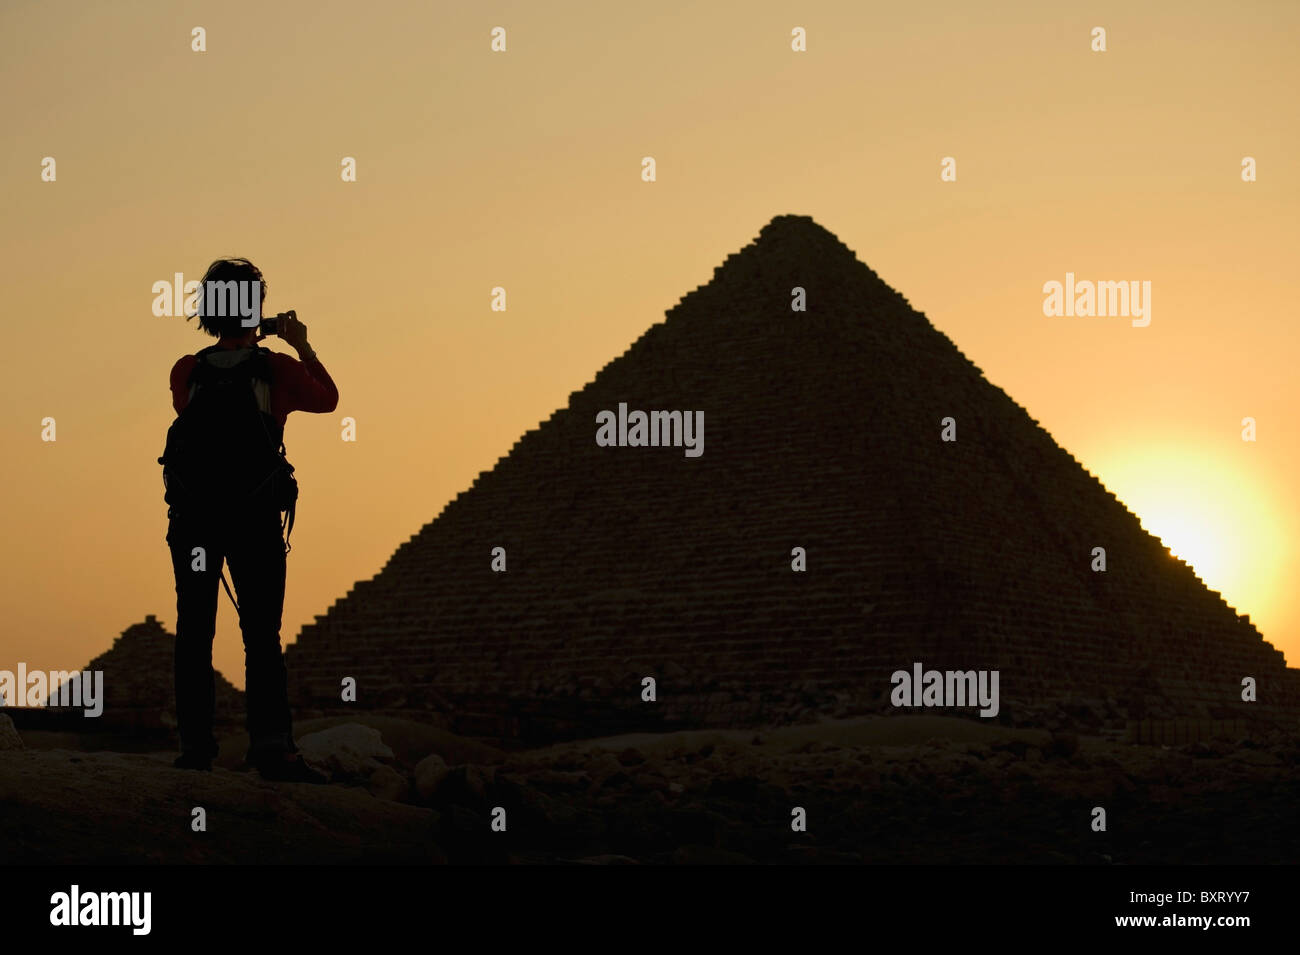 Silhouette der Frau fotografieren Pyramiden in der Abenddämmerung Stockfoto